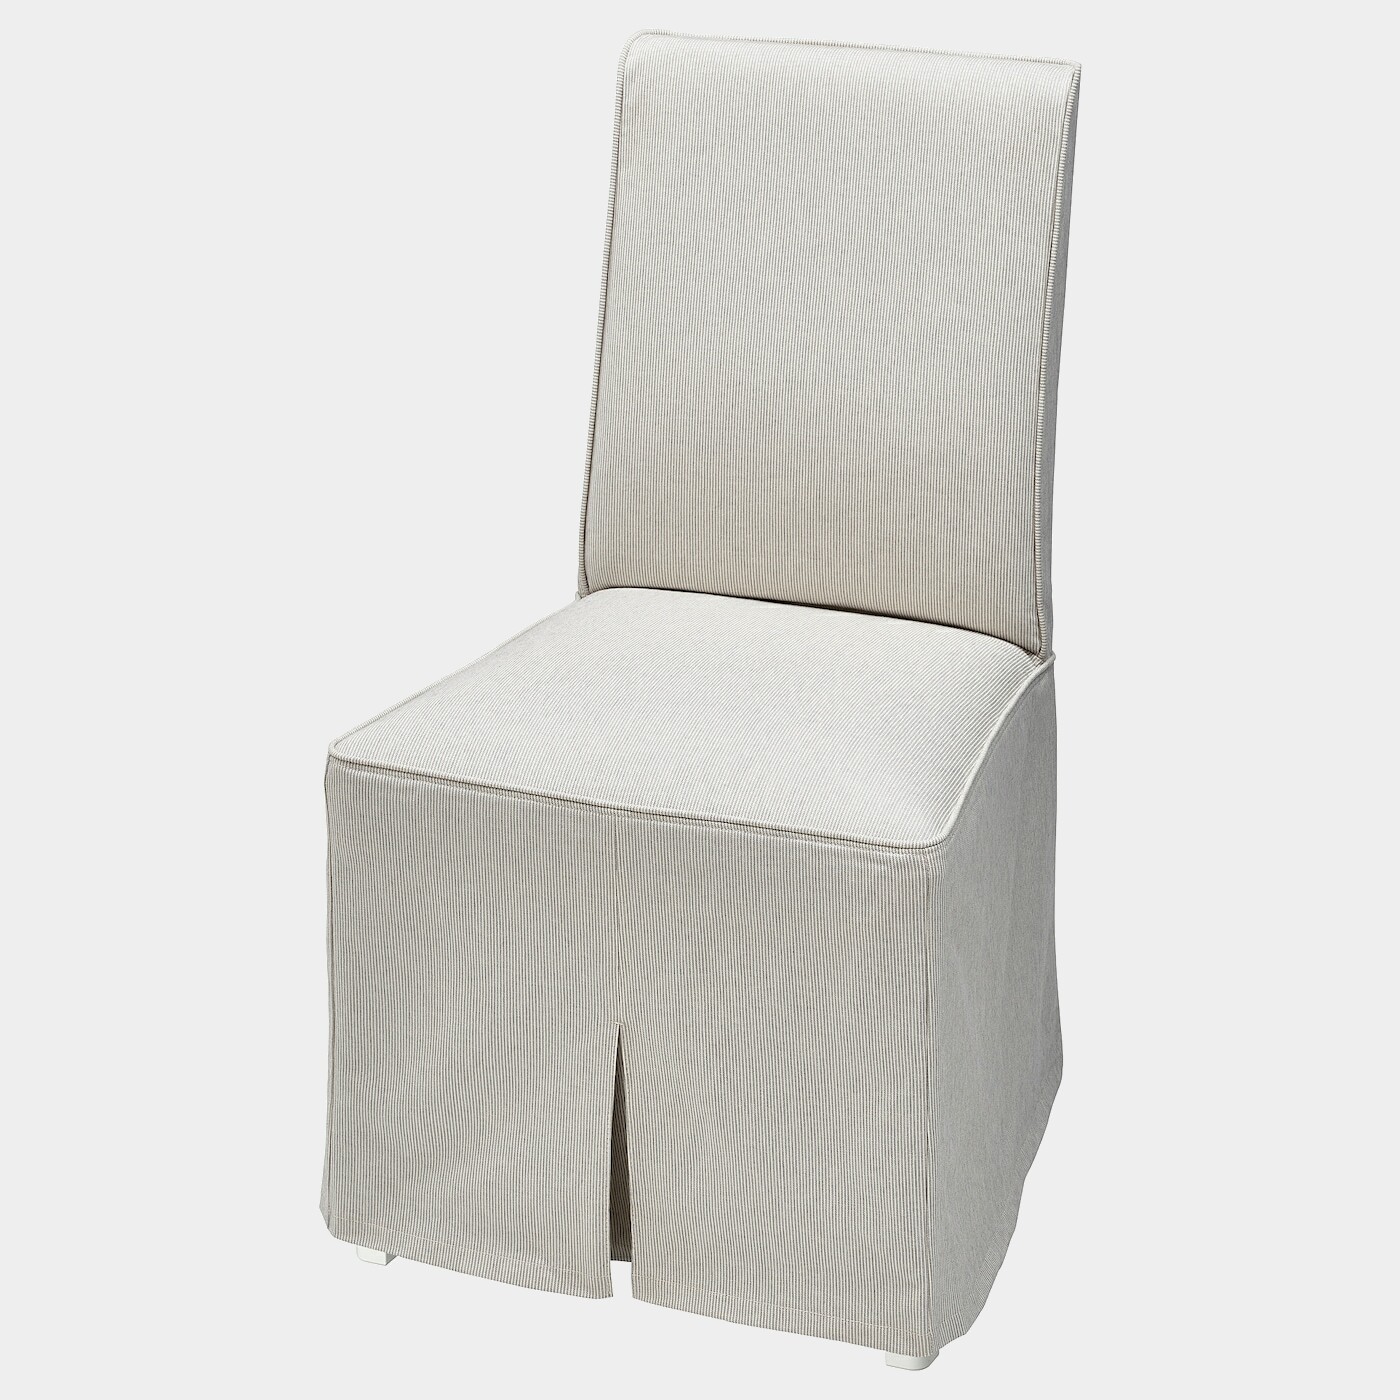 BERGMUND Stuhl mit langem Bezug  -  - Möbel Ideen für dein Zuhause von Home Trends. Möbel Trends von Social Media Influencer für dein Skandi Zuhause.